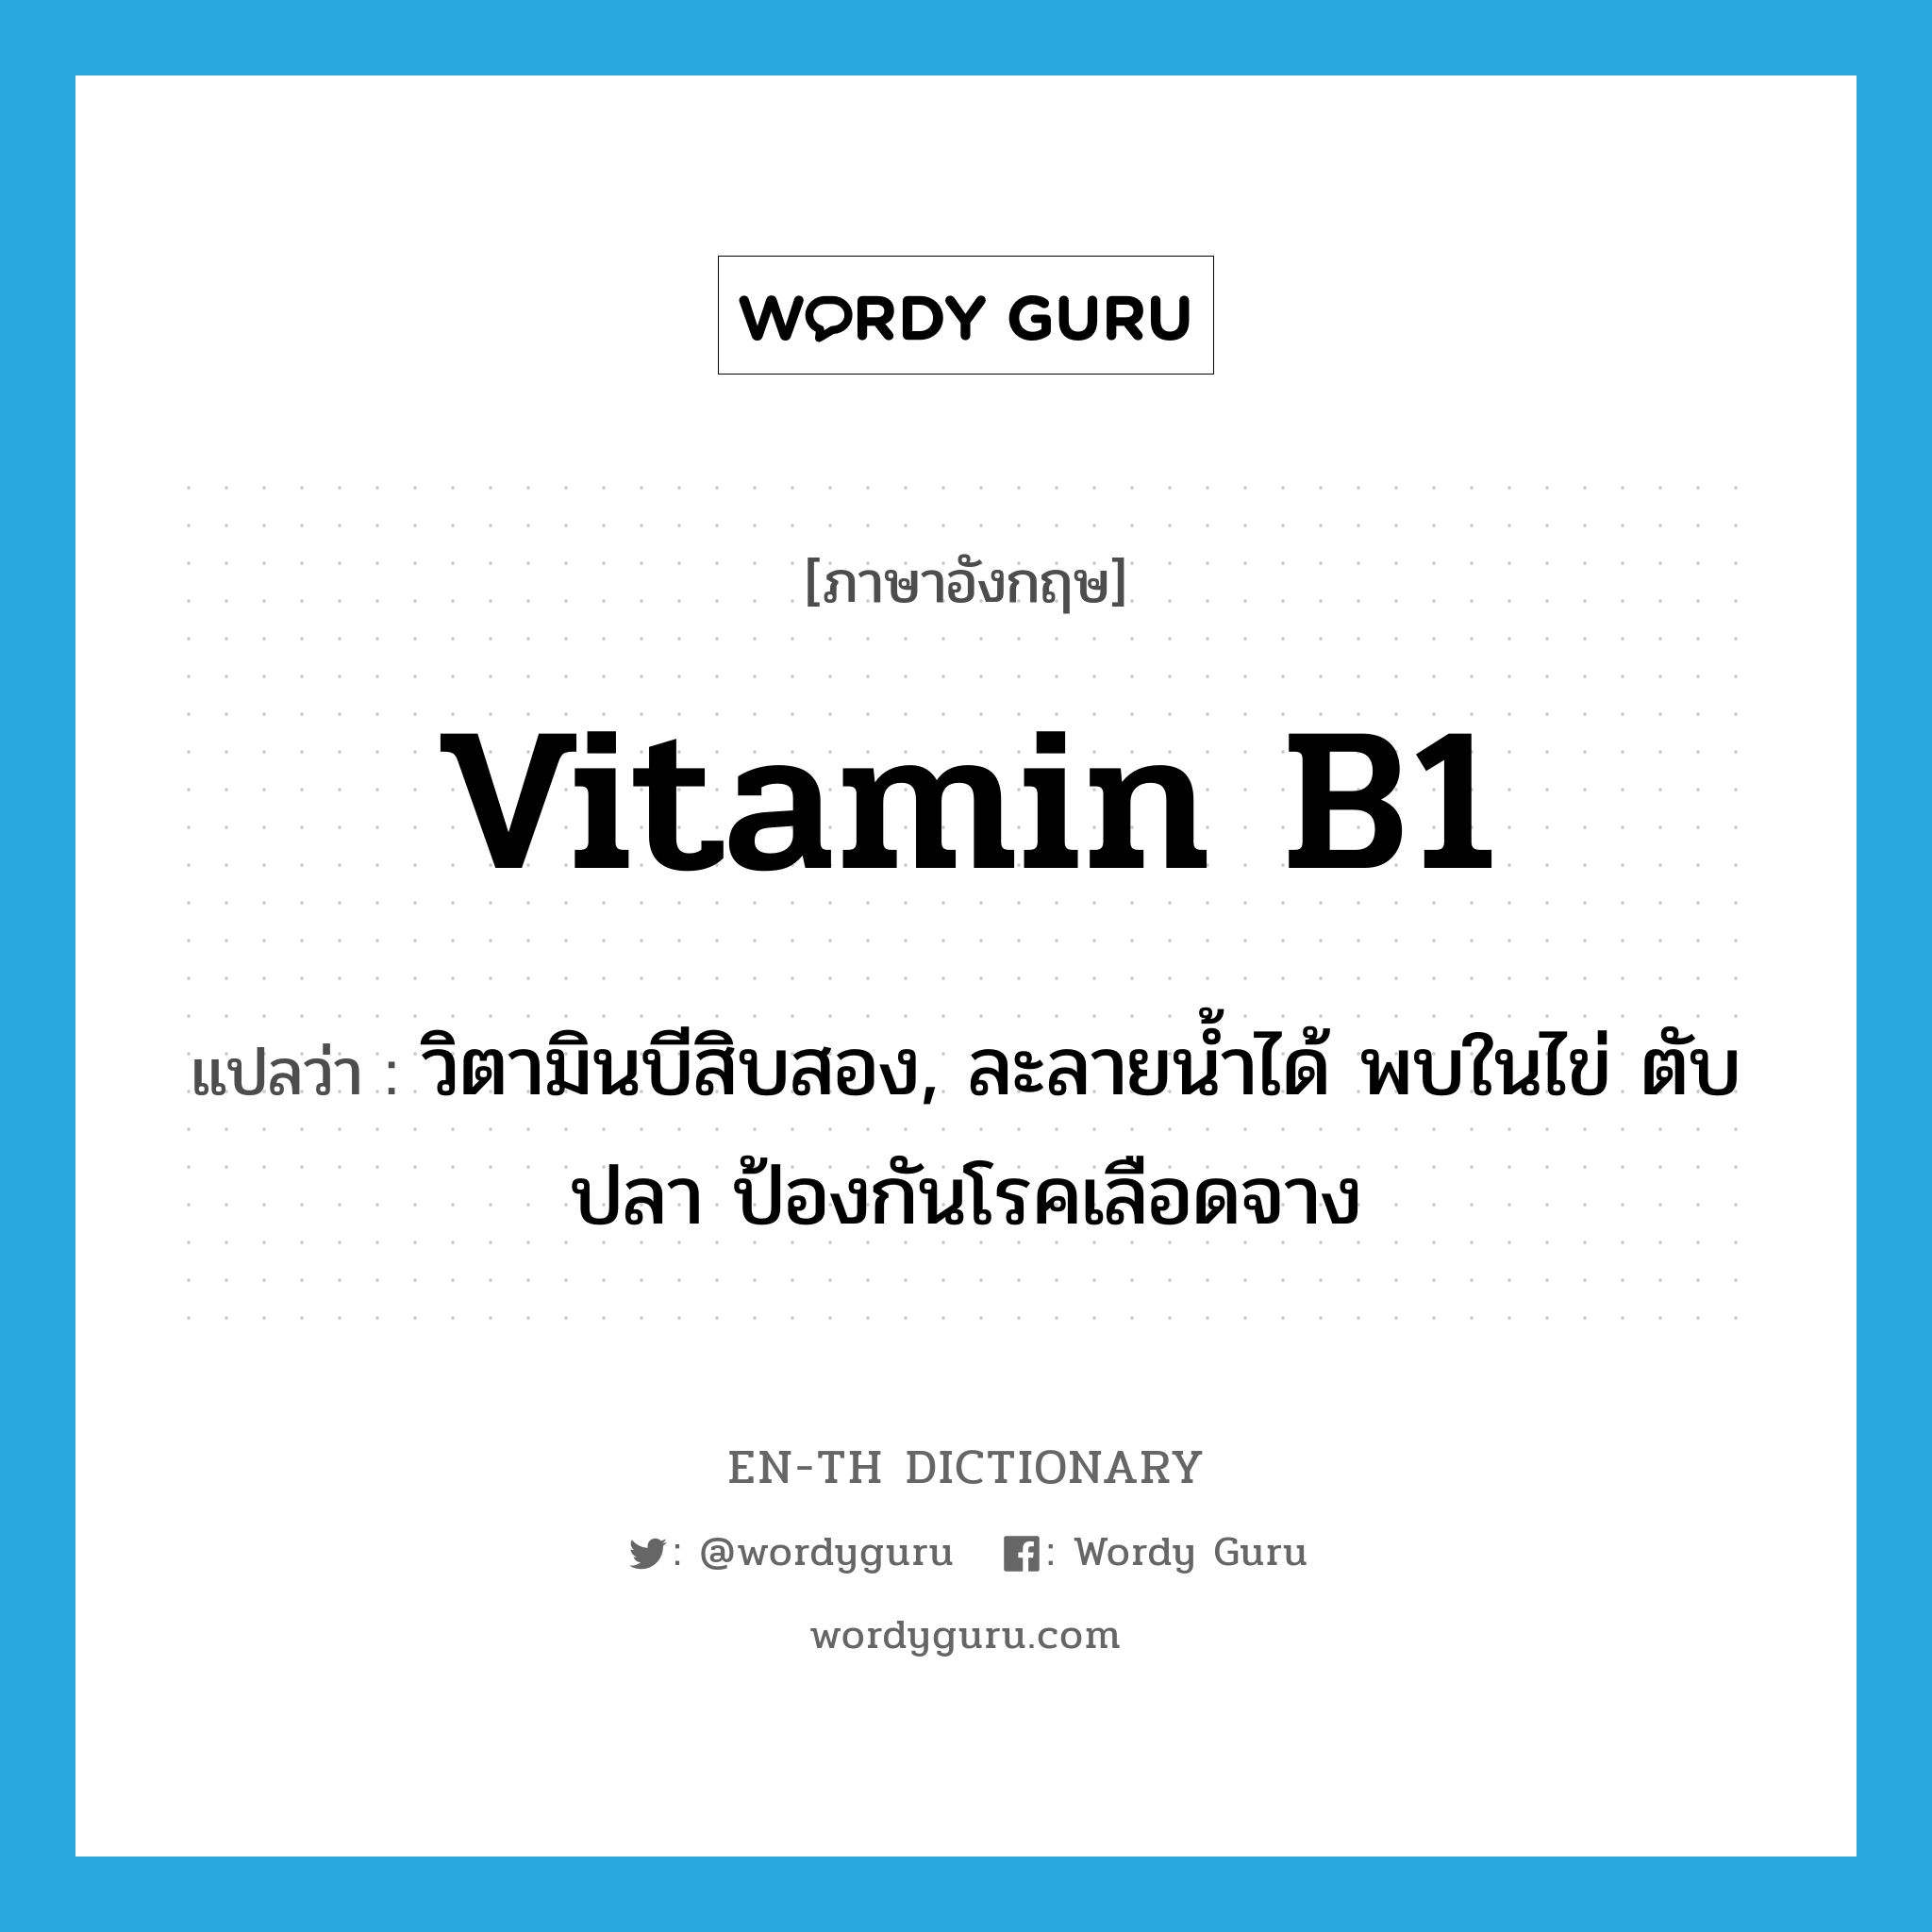 vitamin B1 แปลว่า?, คำศัพท์ภาษาอังกฤษ vitamin B1 แปลว่า วิตามินบีสิบสอง, ละลายน้ำได้ พบในไข่ ตับ ปลา ป้องกันโรคเลือดจาง ประเภท N หมวด N